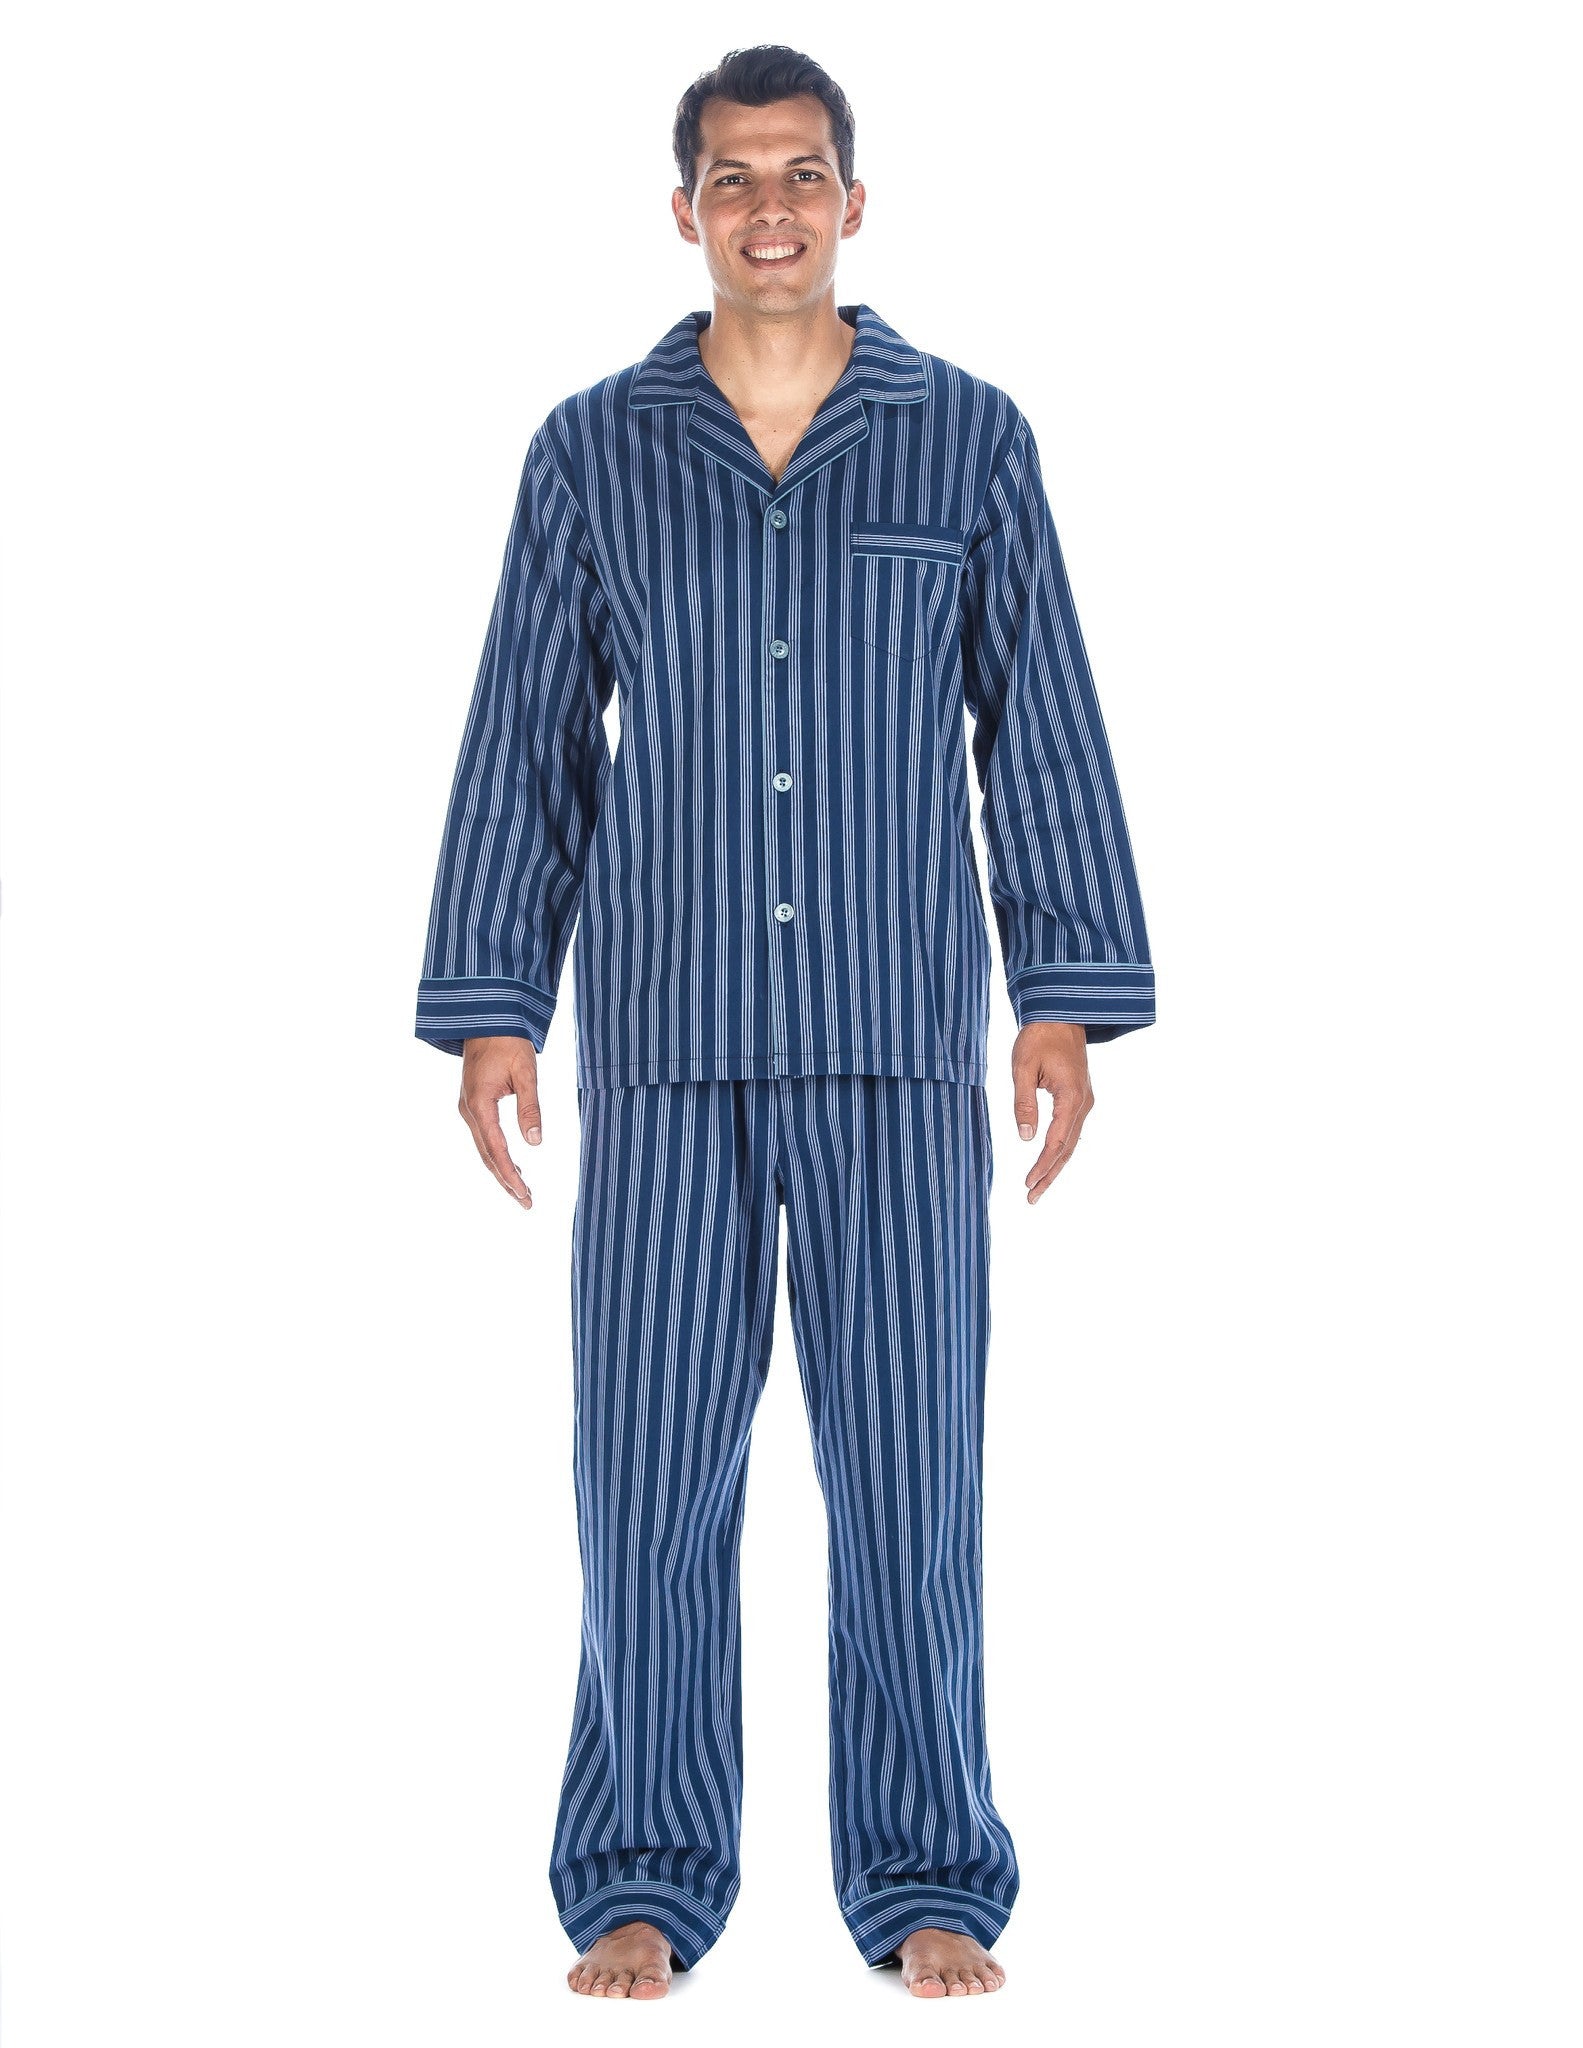 Noble Mount Mens Premium 100% Cotton Woven Pajama Sleepwear Set